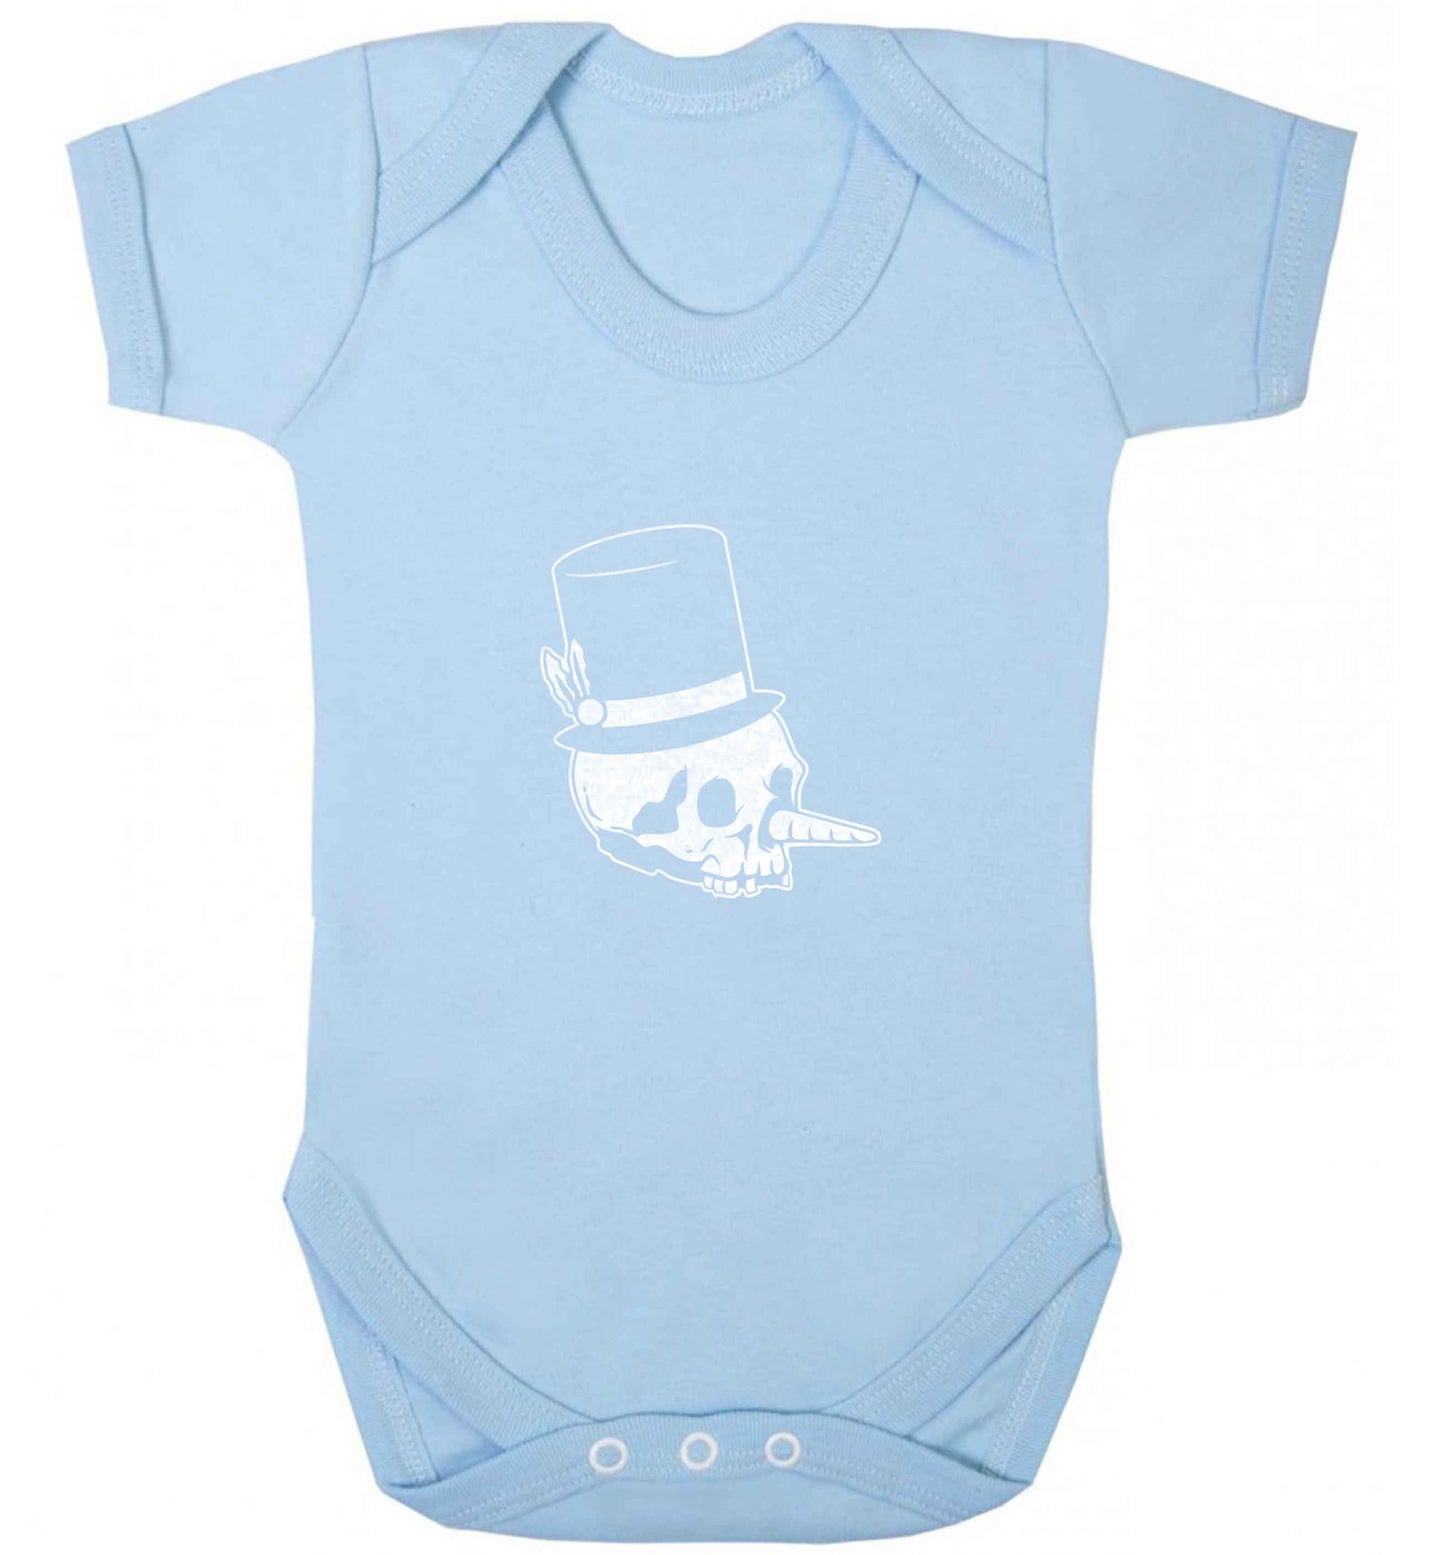 Snowman punk baby vest pale blue 18-24 months